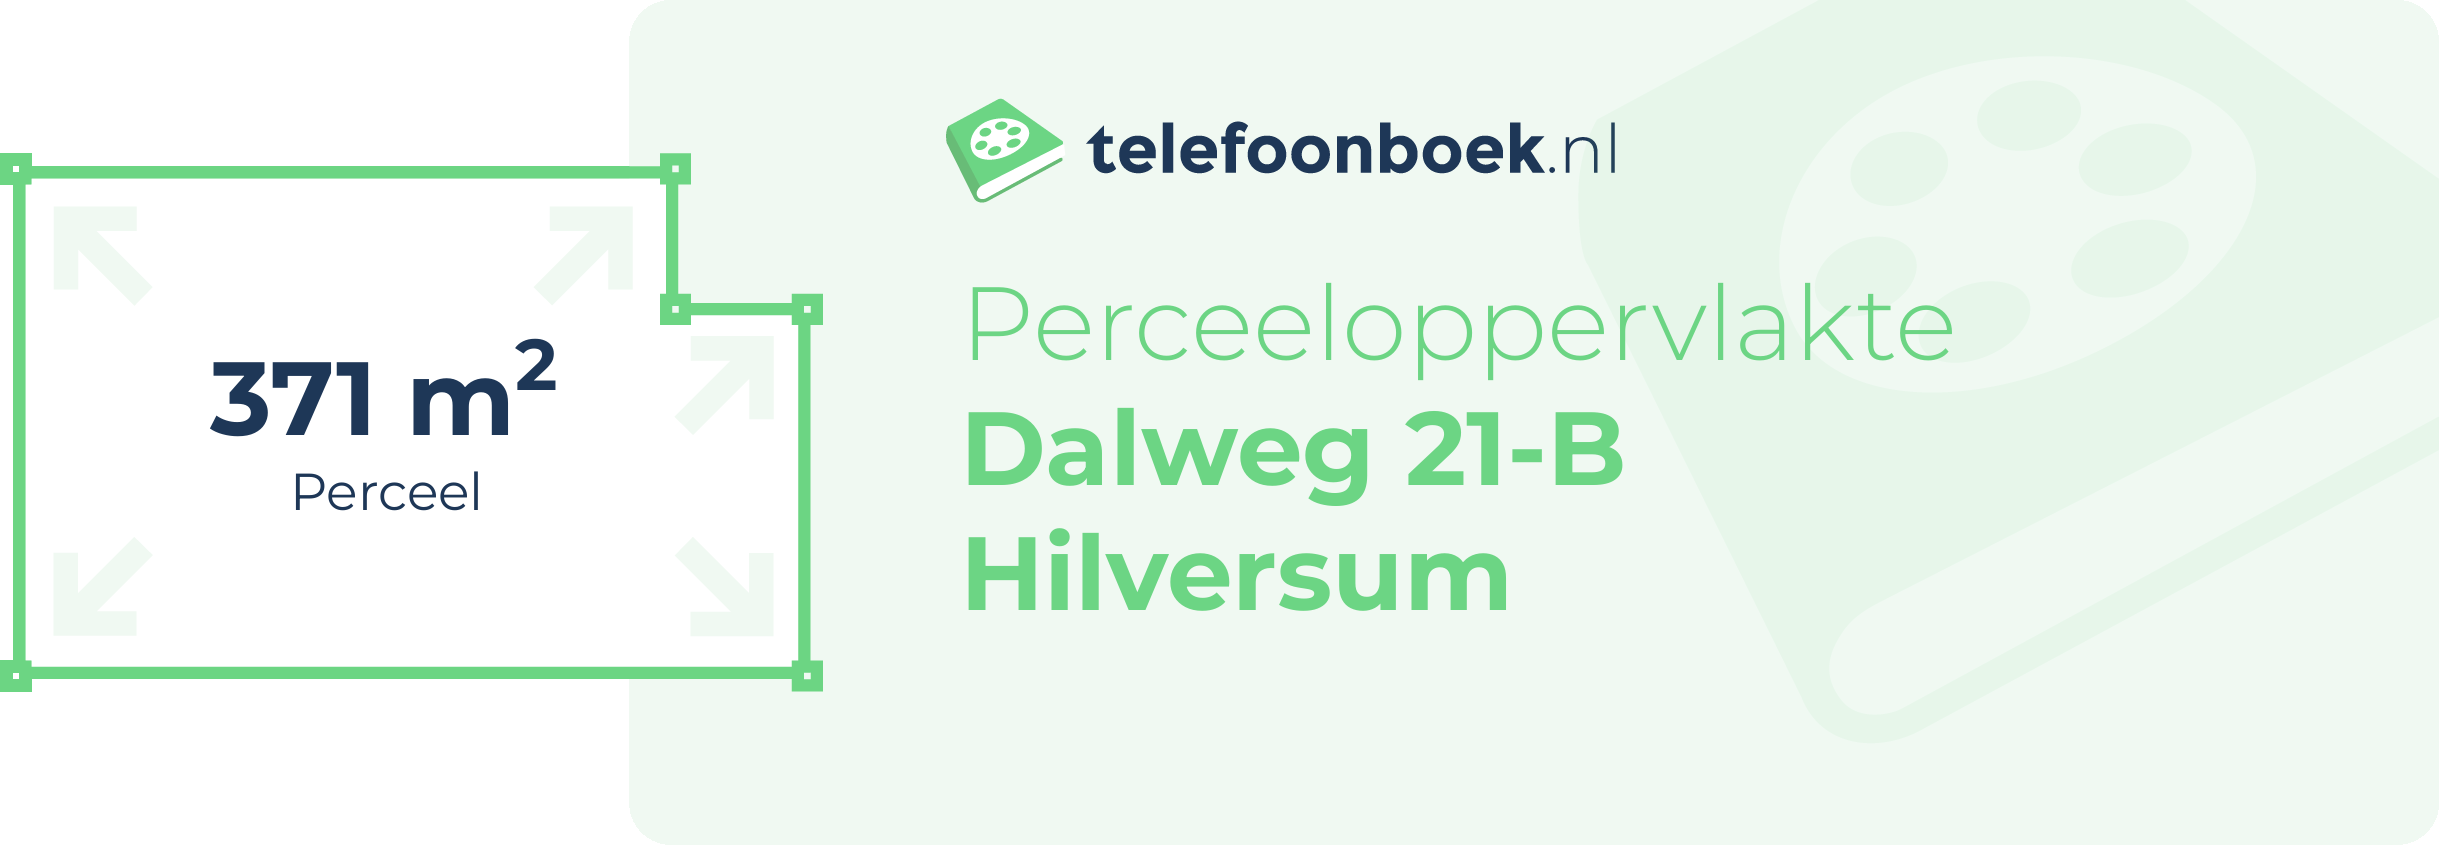 Perceeloppervlakte Dalweg 21-B Hilversum